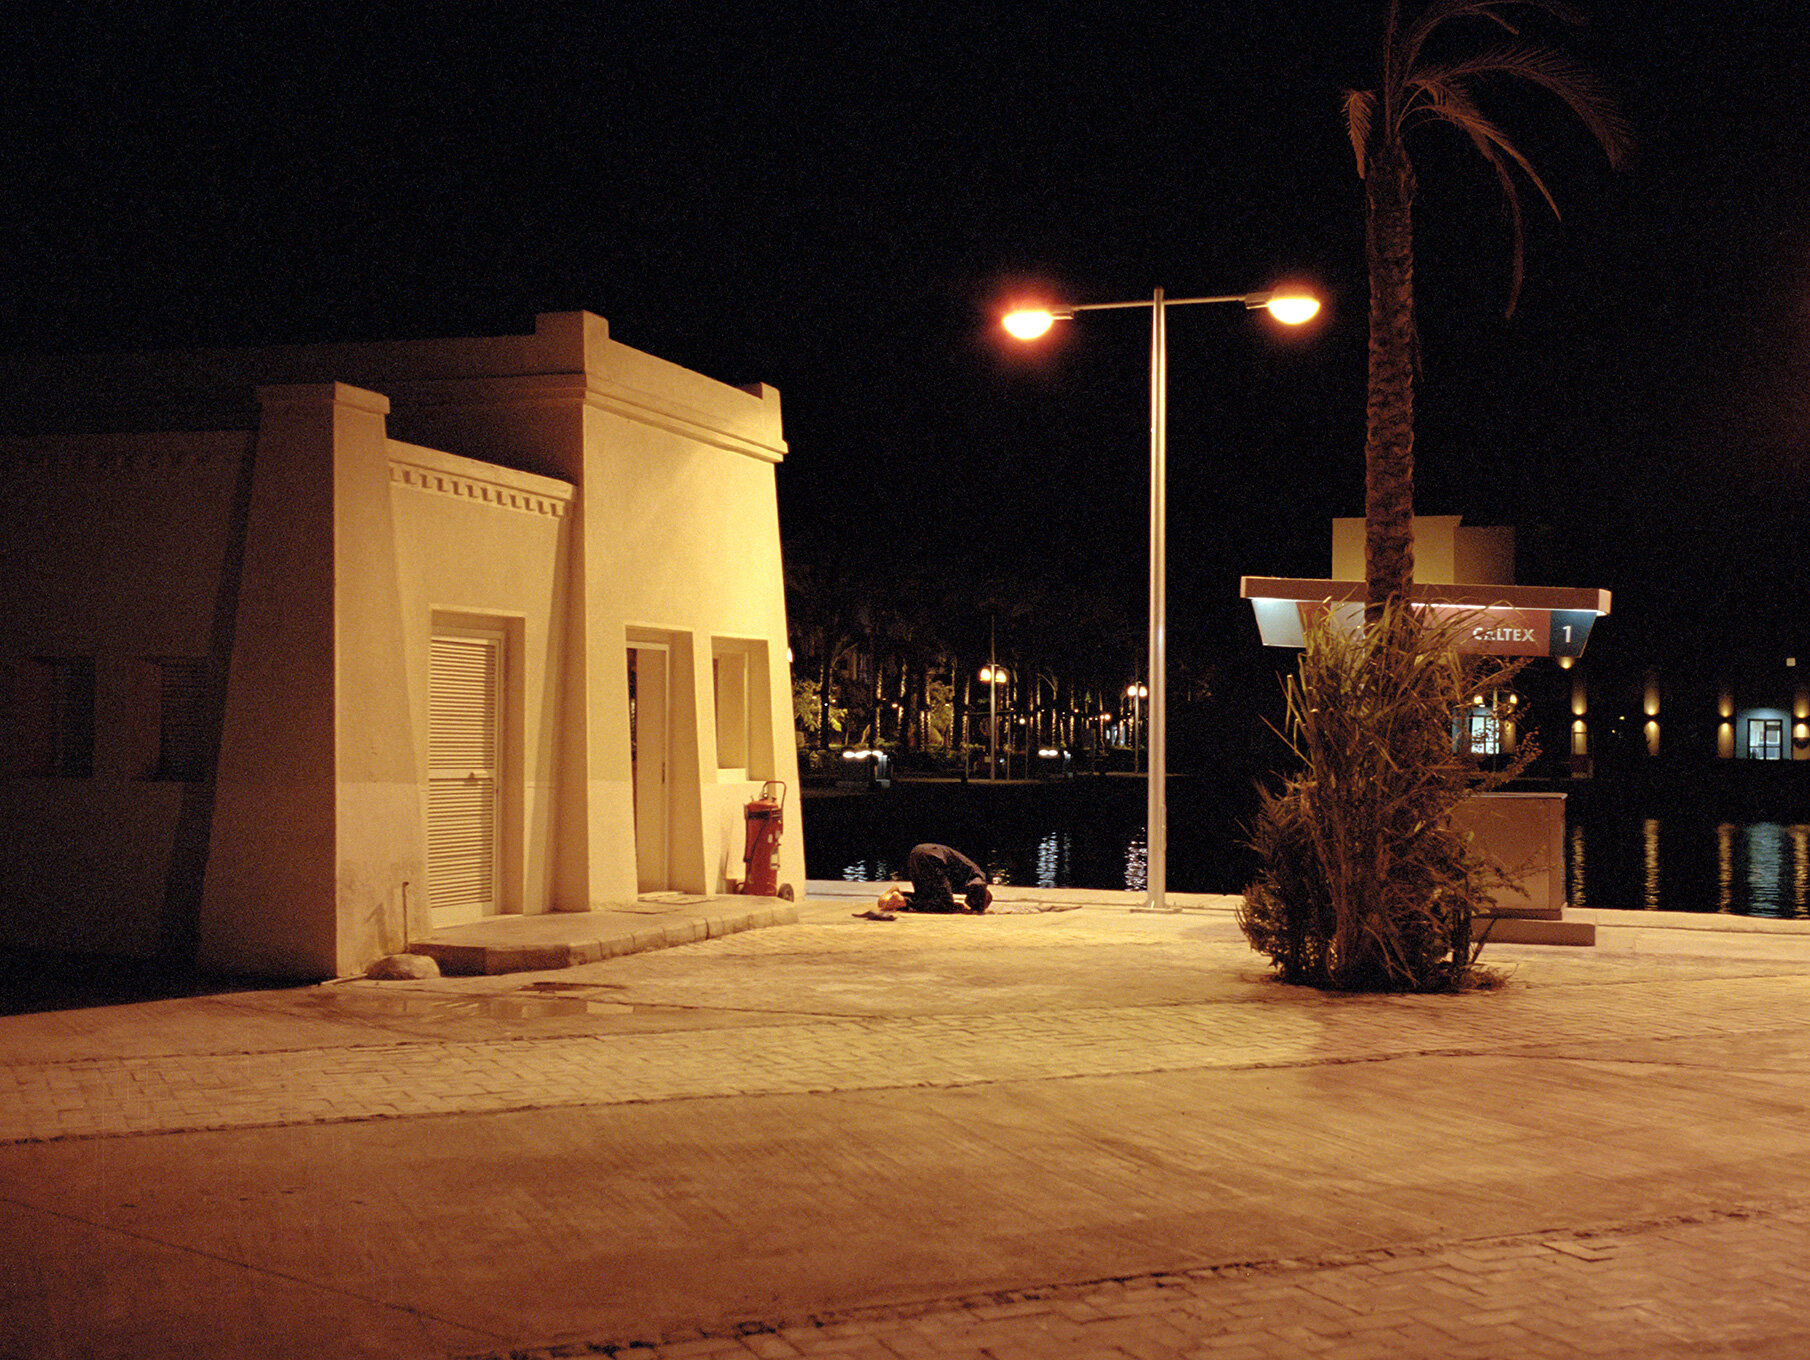   Night prayer,  Port Ghalib, Egypt, 2010  